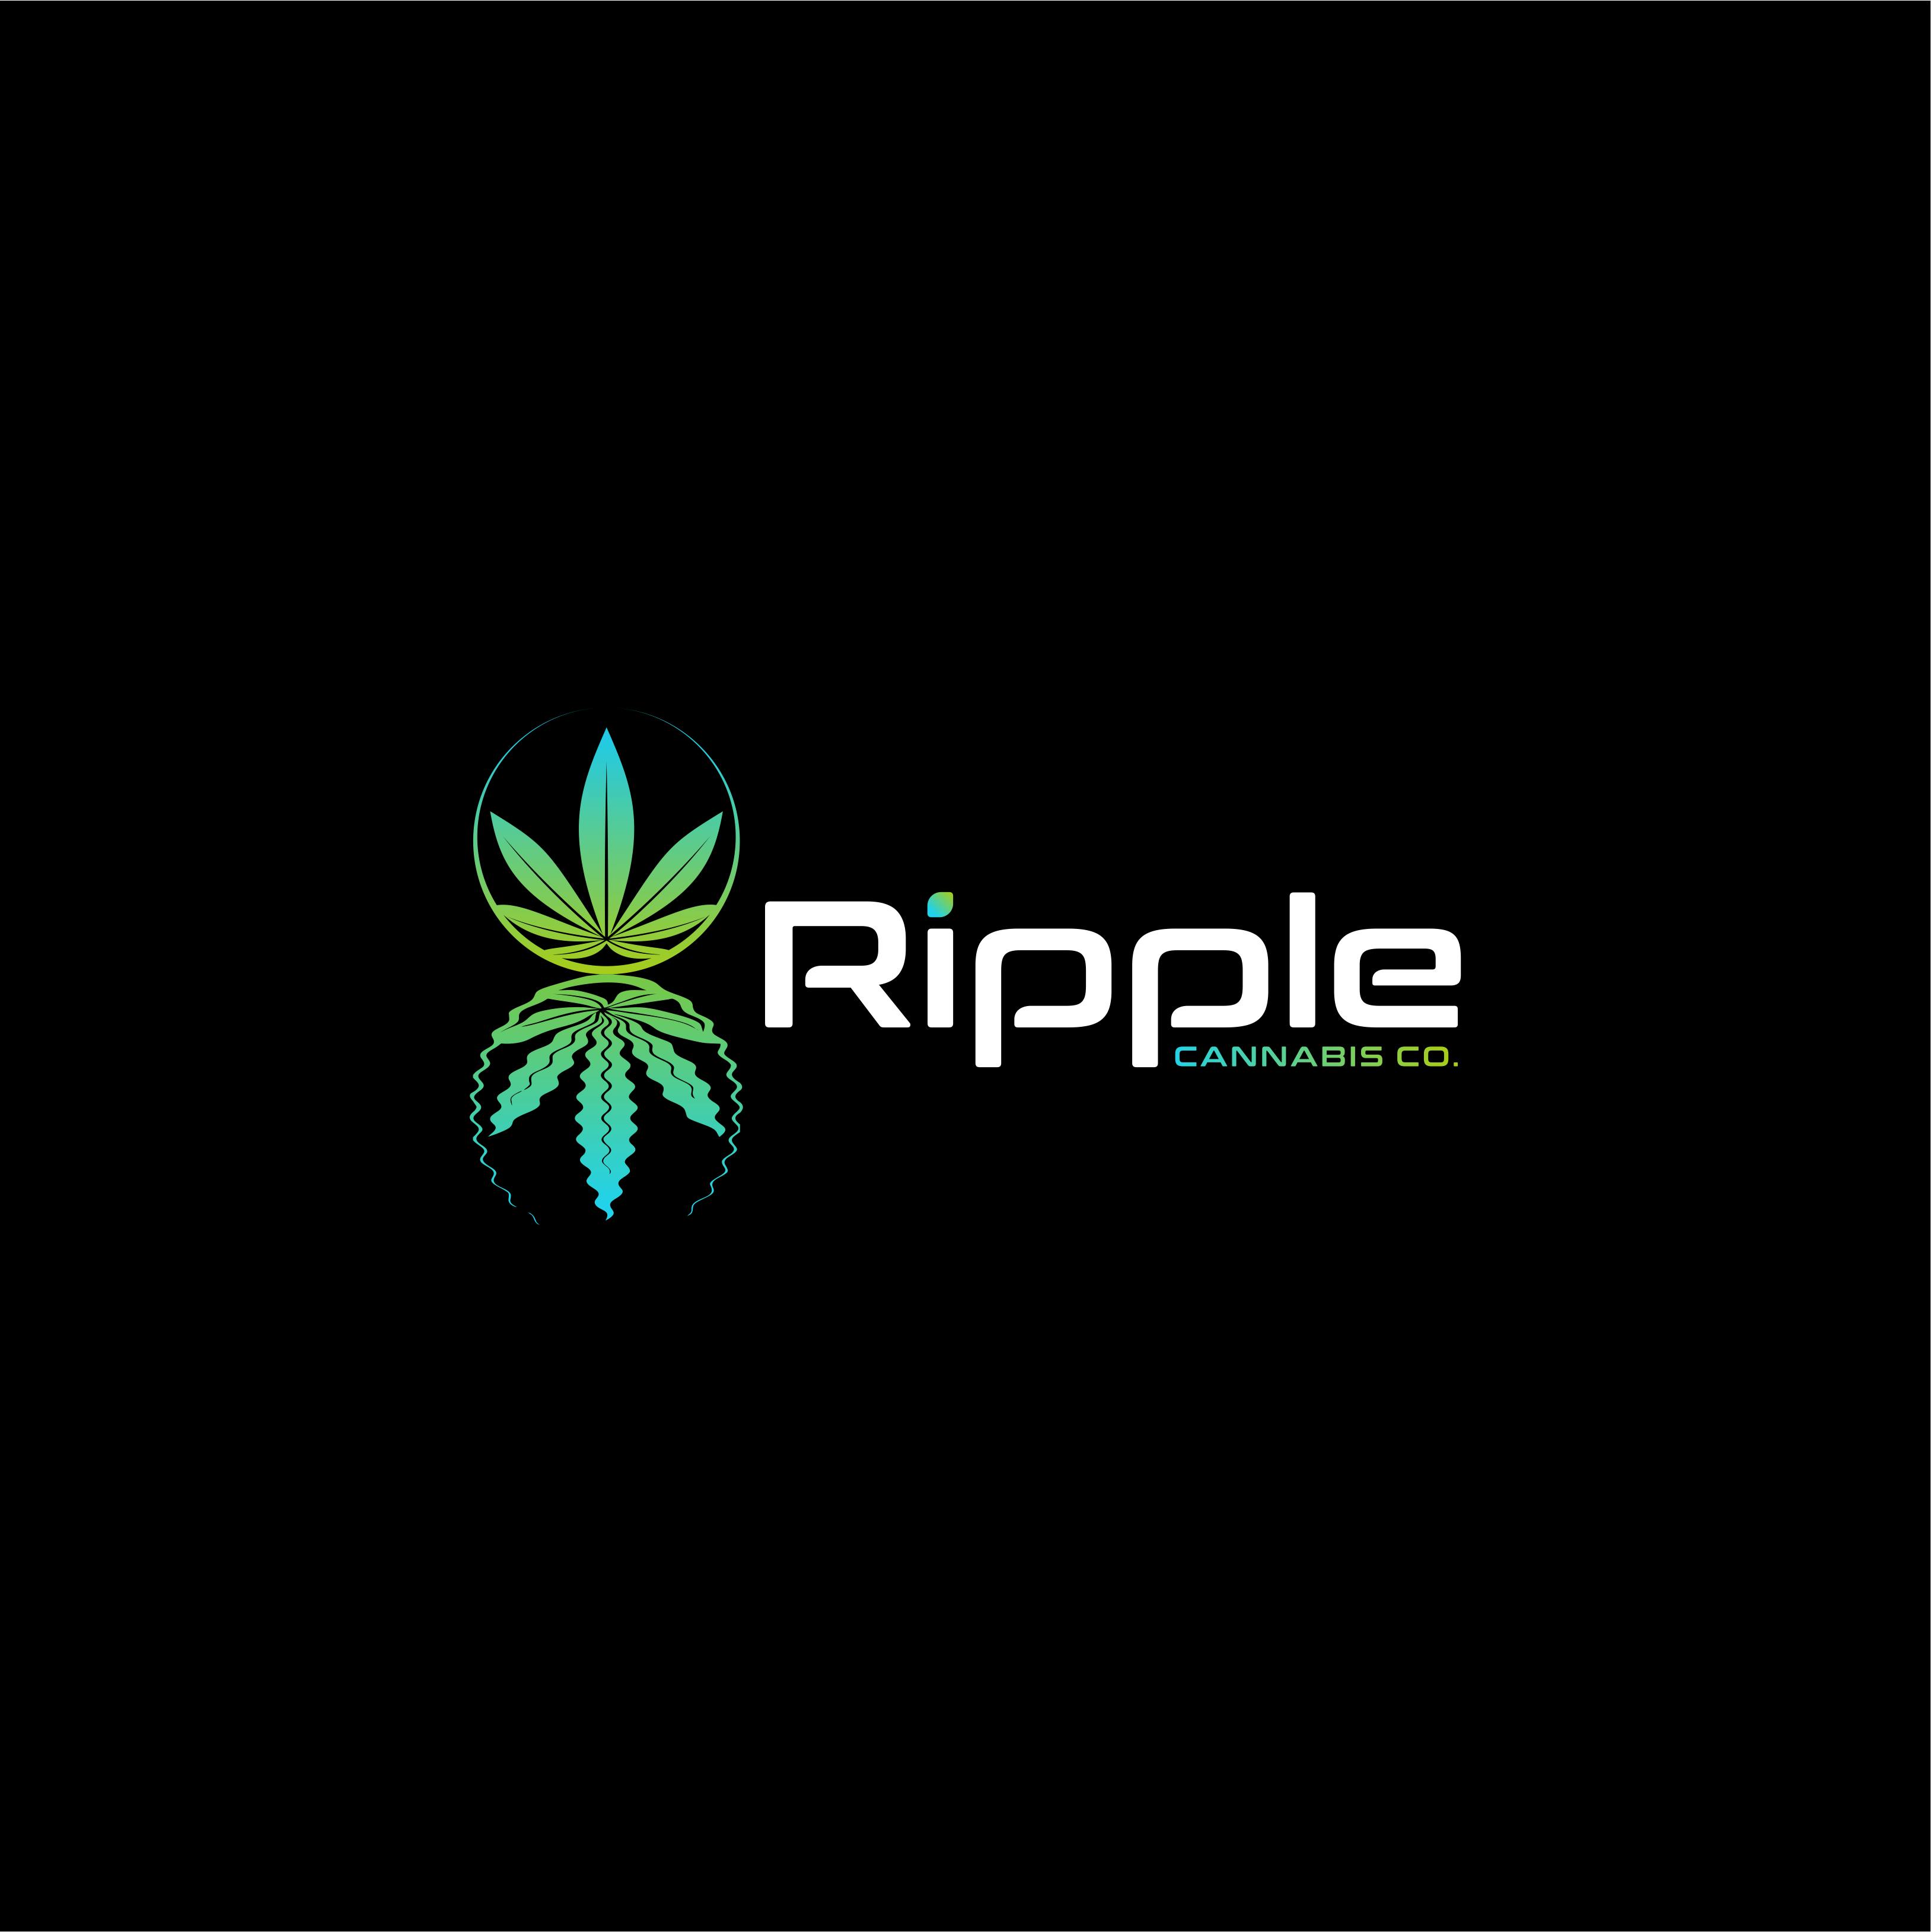 Ripple Cannabis Co logo